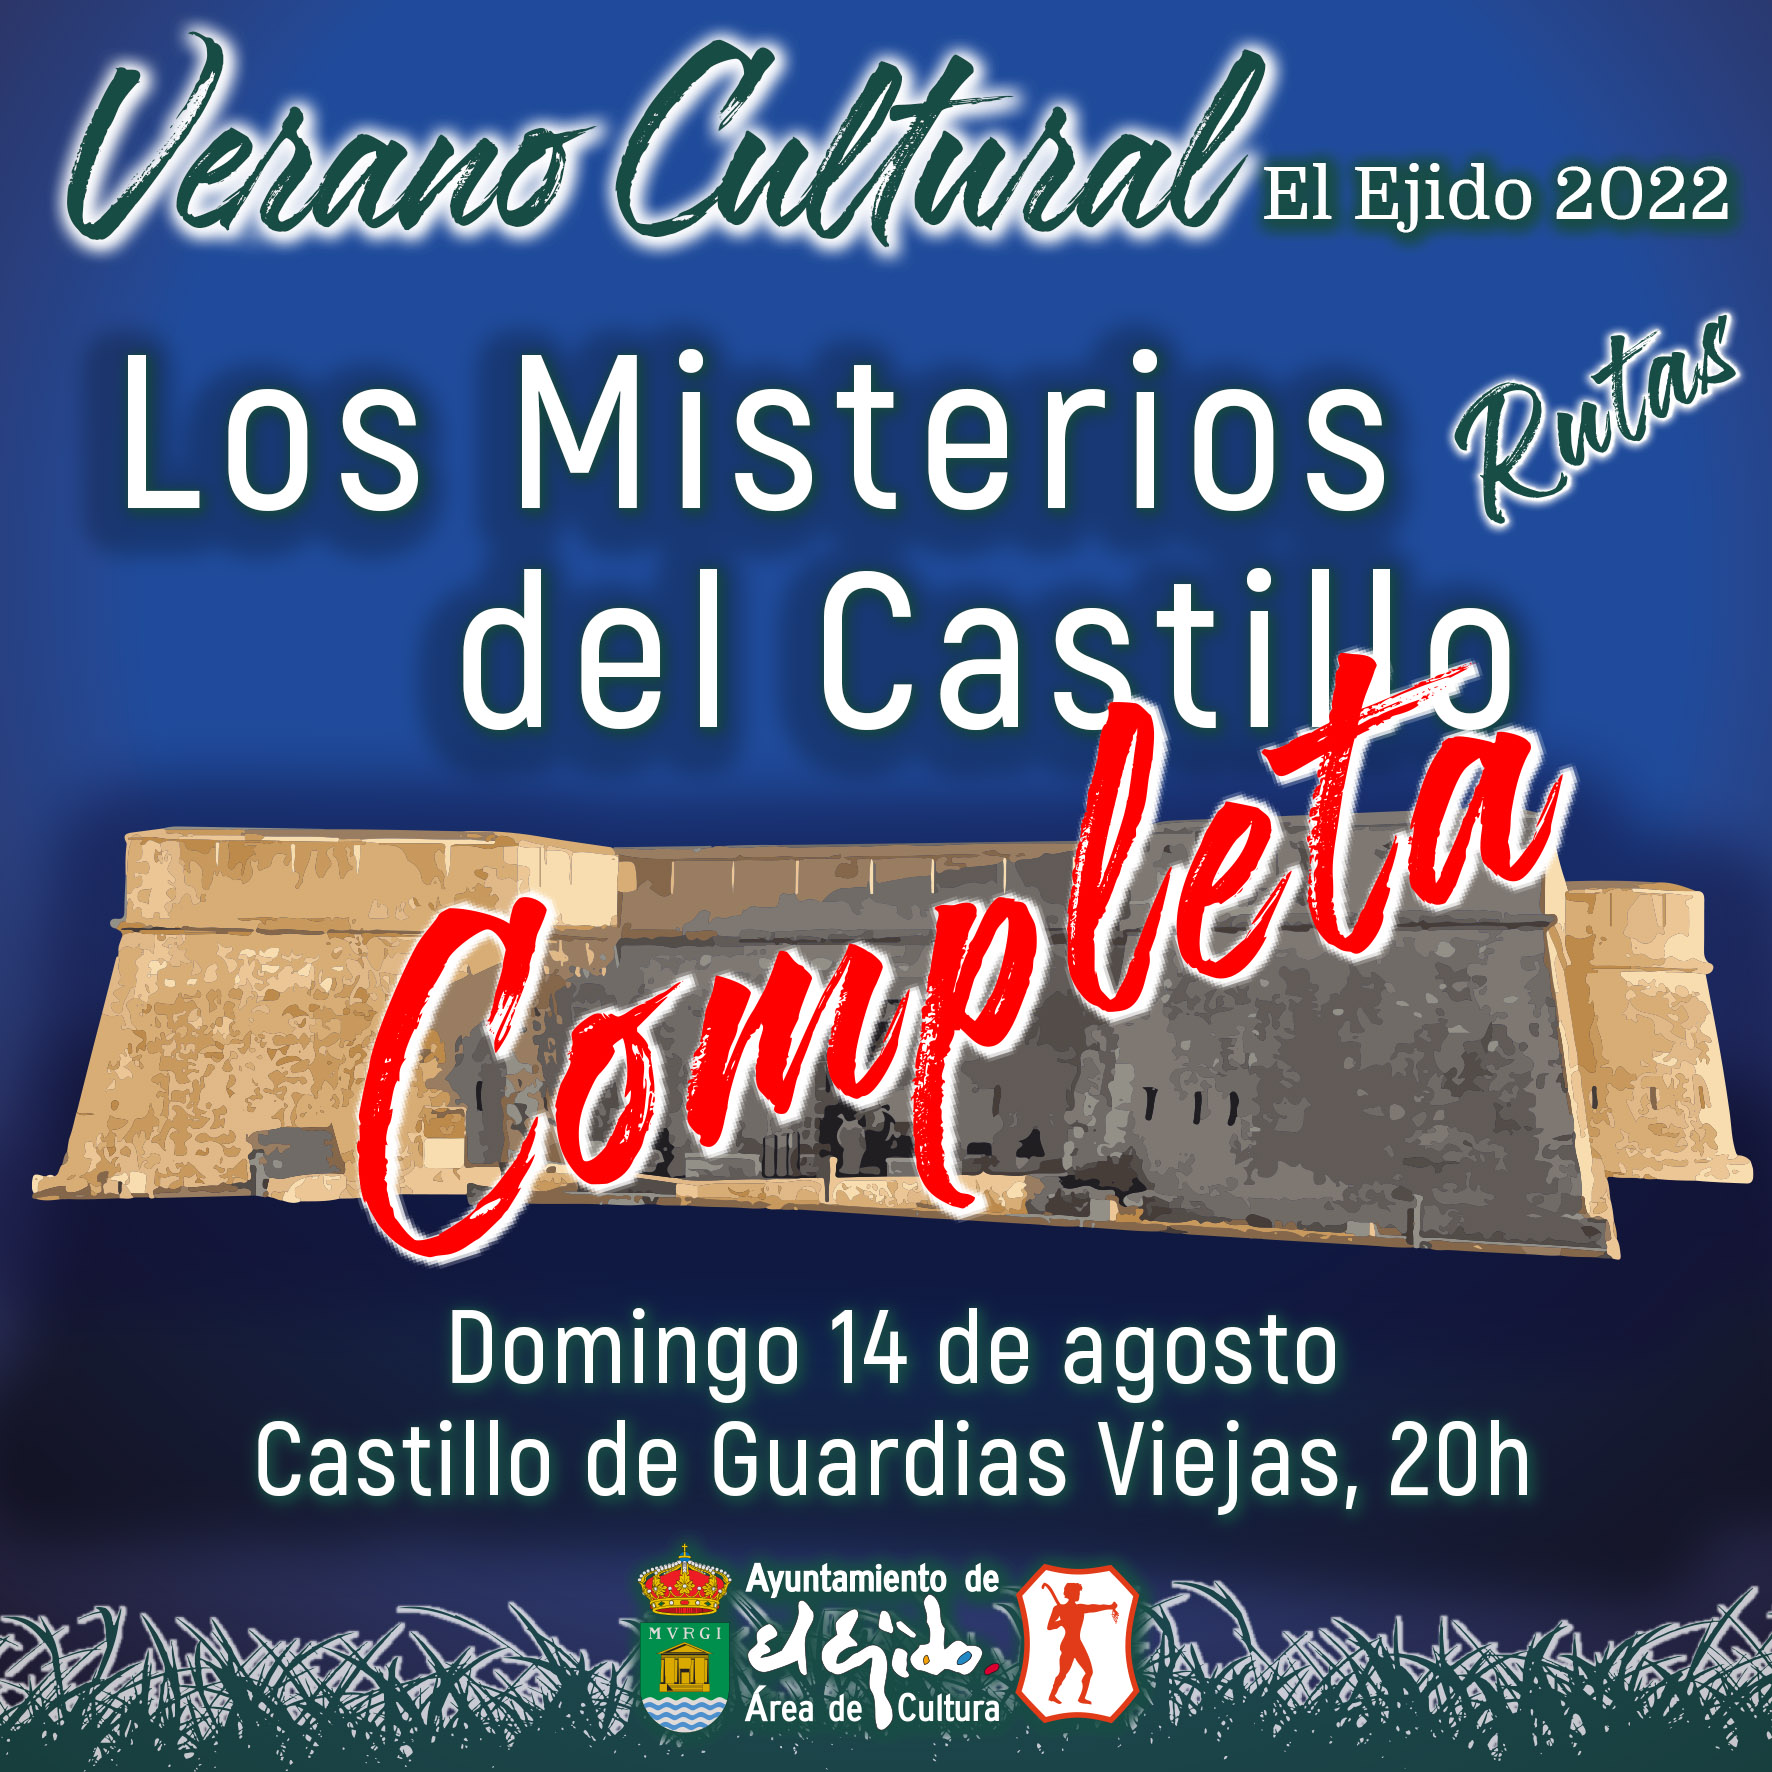 COMPLETA Verano Cultural 2022 de El Ejido – Rutas – Los Misterios del Castillo – Domingo 14 de agosto